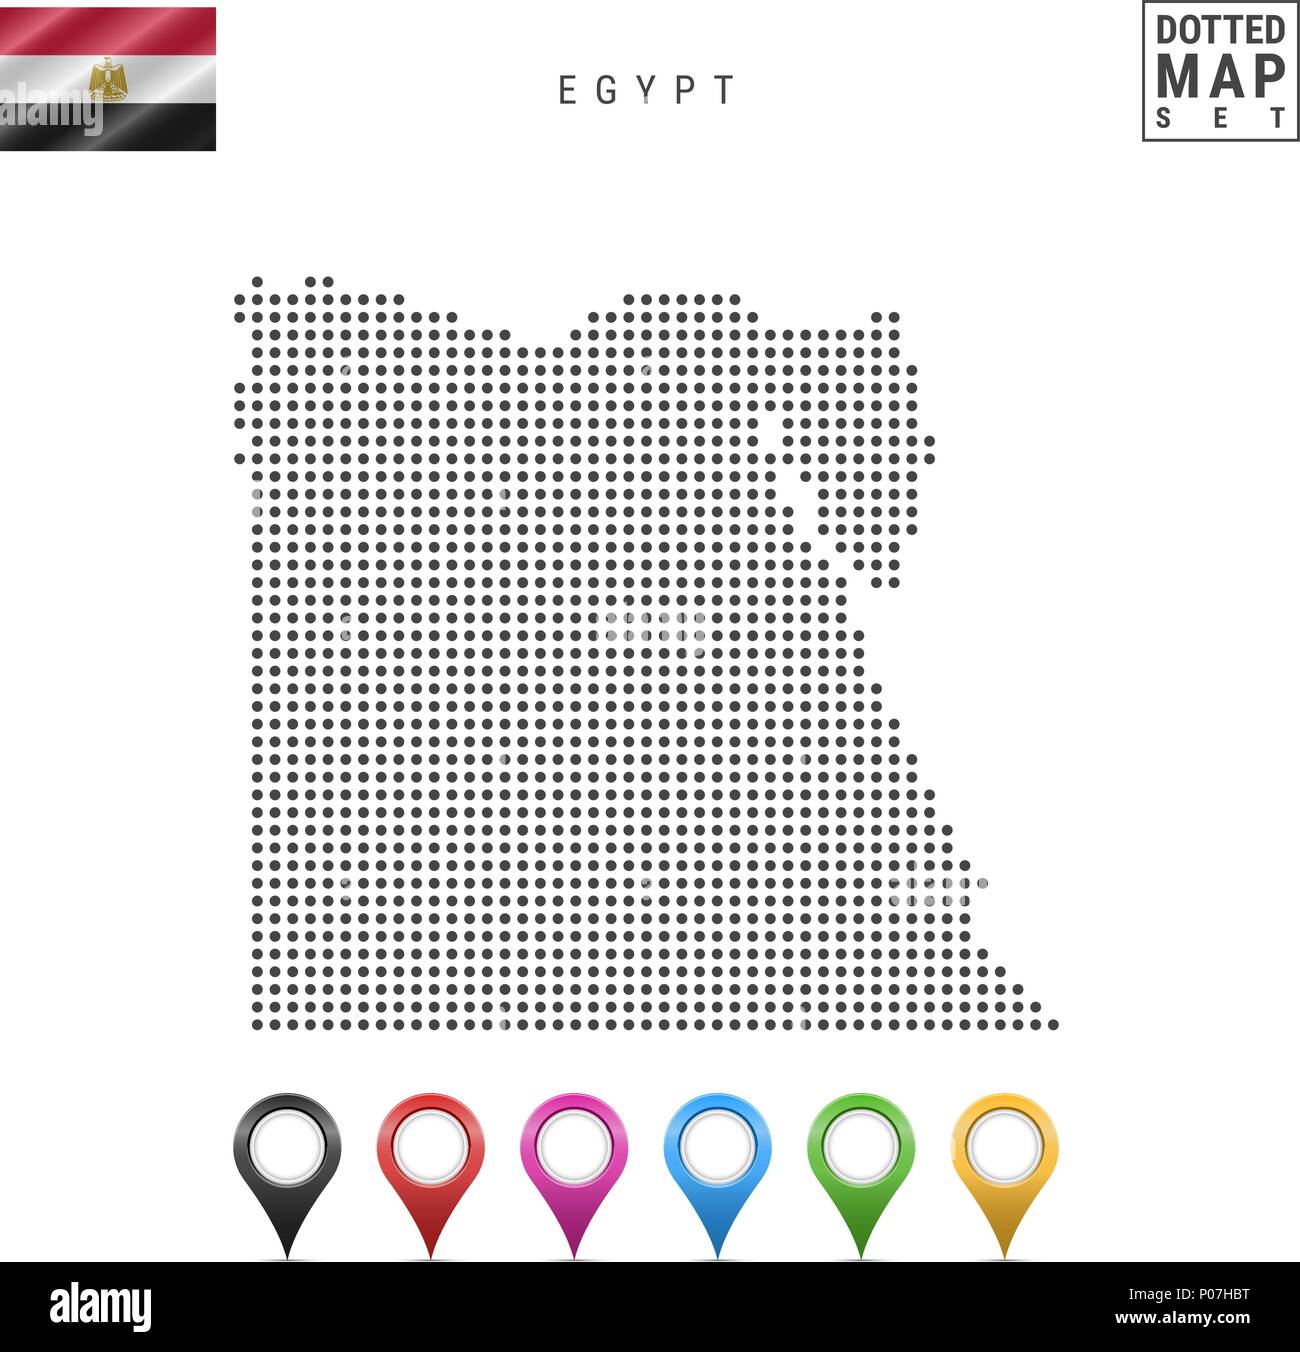 Vektor gepunktete Karte von Ägypten. Einfache Silhouette von Ägypten. Die Nationalflagge von Ägypten. Eingestellt von bunten Karte Markierungen Stock Vektor